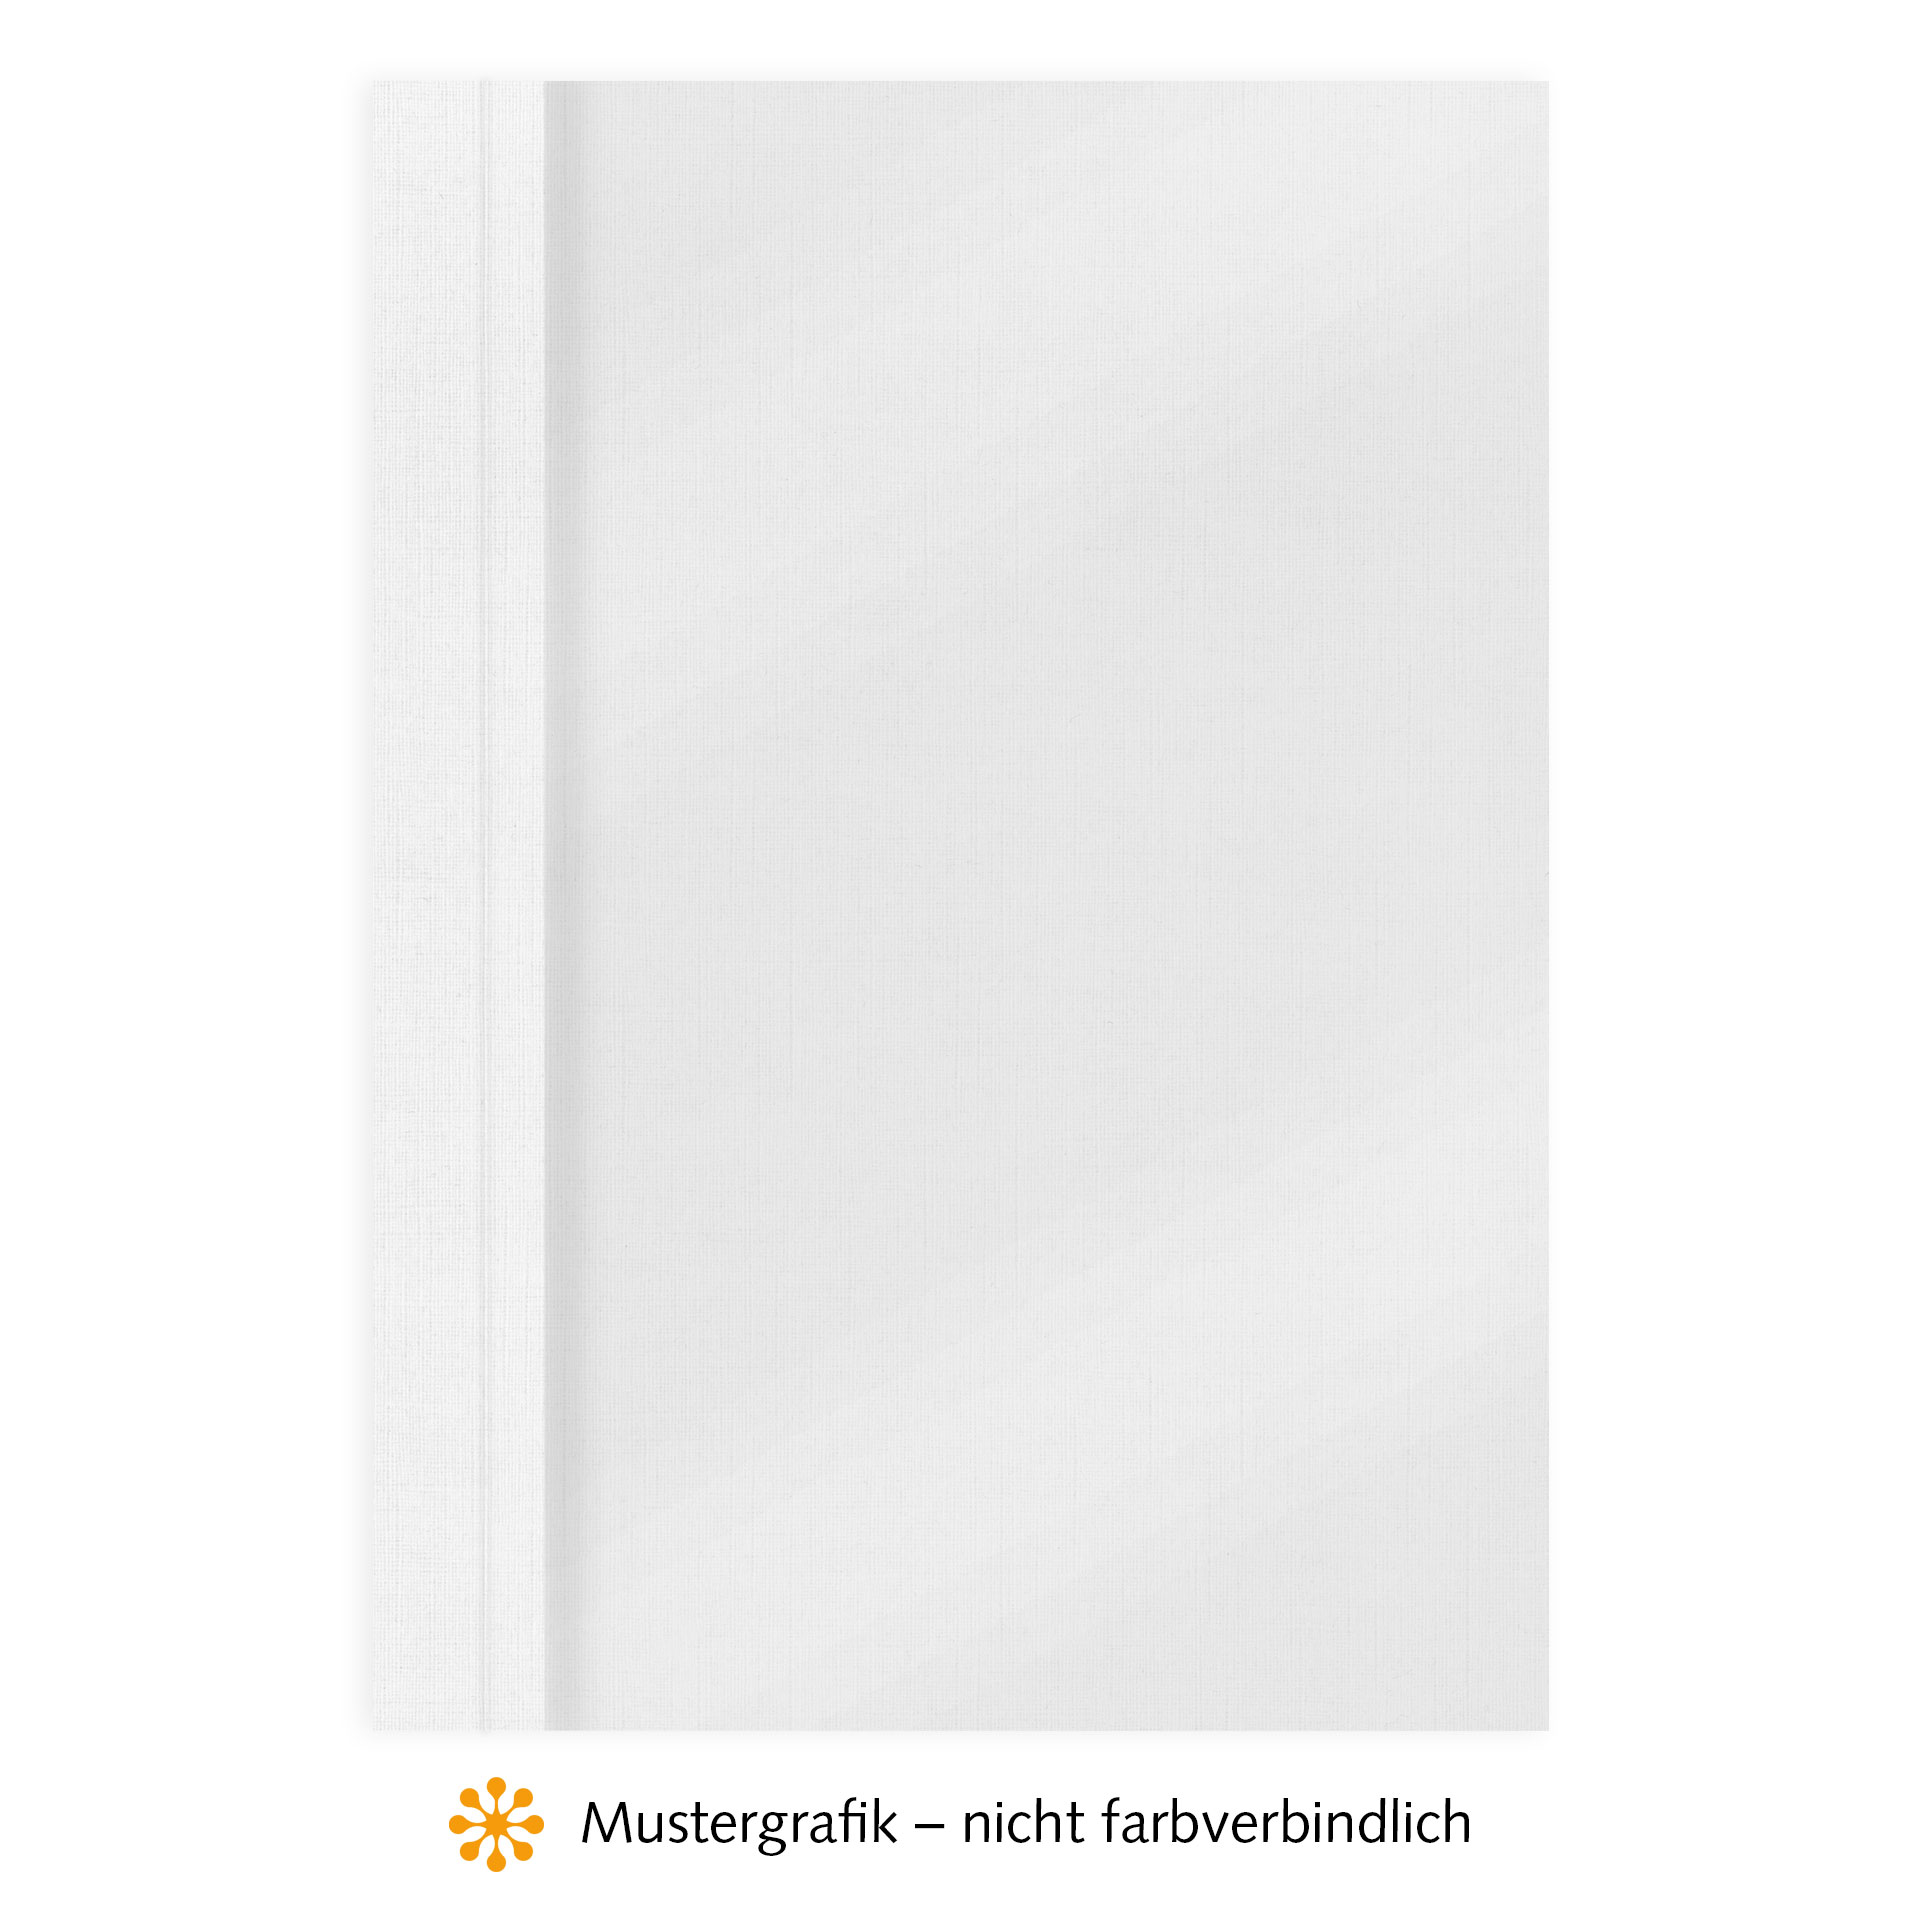 Ösenmappen DUO Cover, Vorderseite Folie MATT transparent, Rückseite Karton Leinen, Weiß, 4 mm, 31 bis 40 Blatt